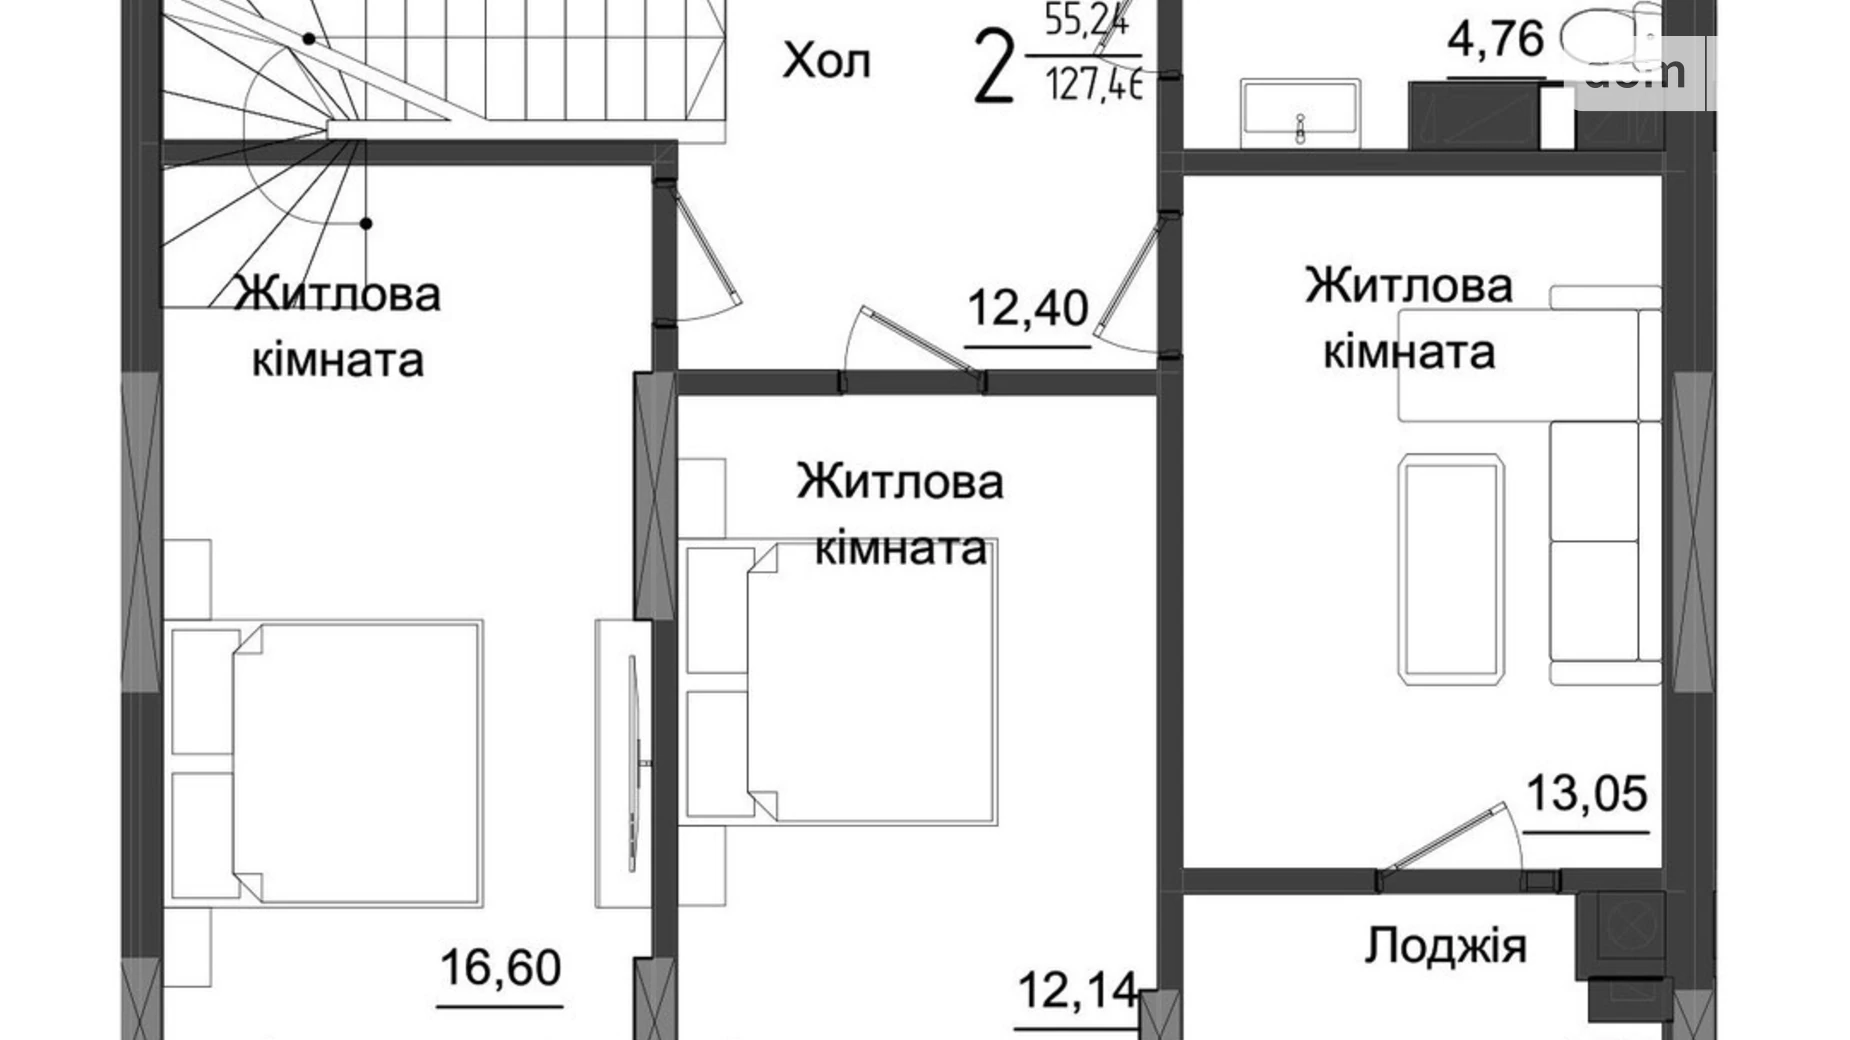 Продається 4-кімнатна квартира 128.66 кв. м у Чернівцях